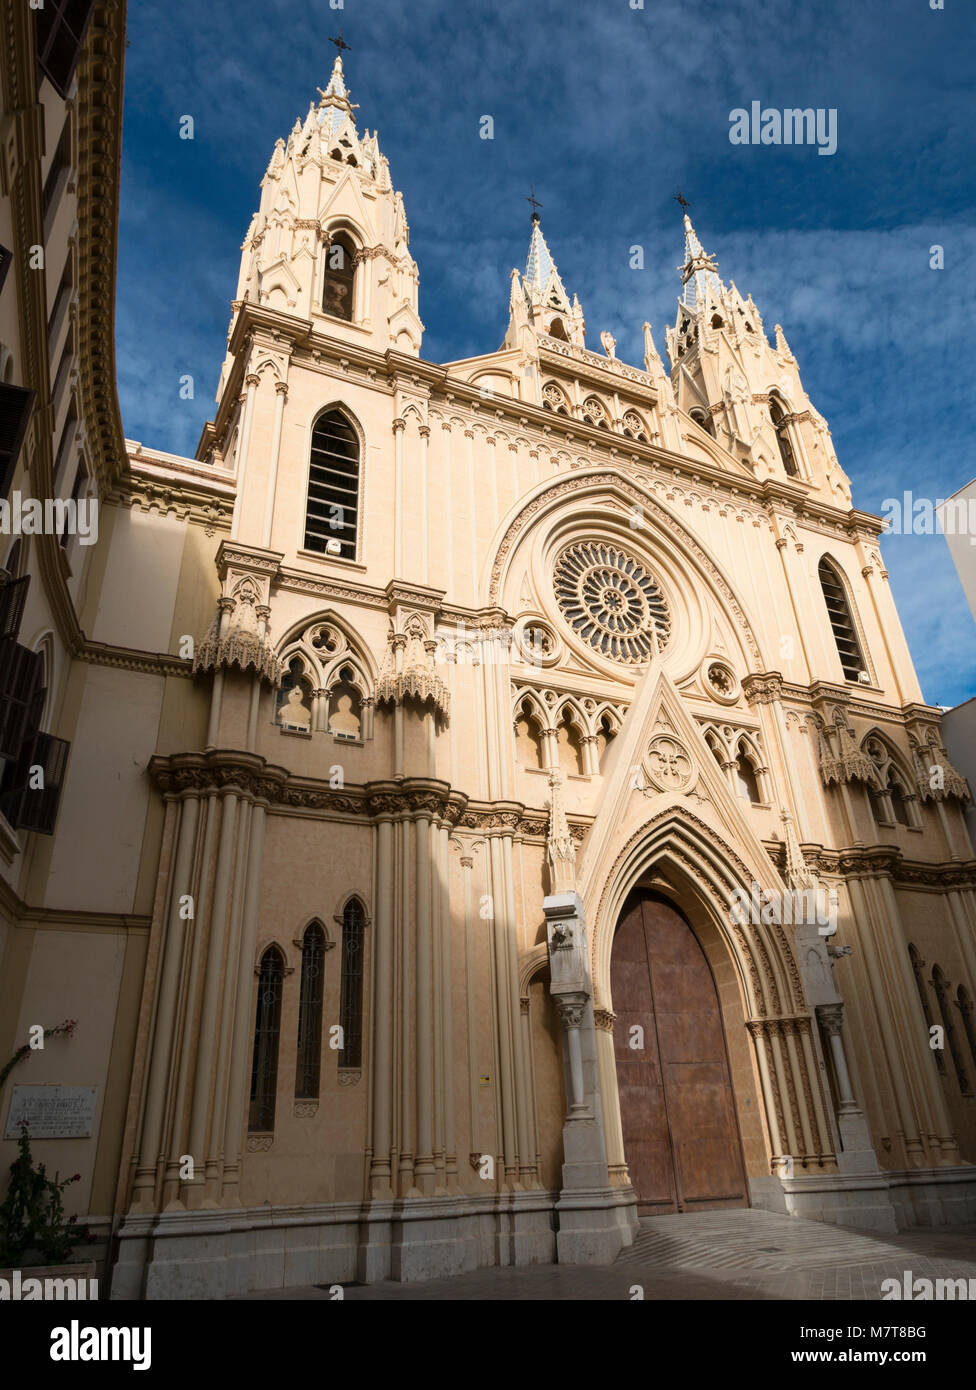 L'église du Sacré-Cœur (La Iglesia del Sagrado Corazon) Malaga, Andalousie, espagne. Banque D'Images